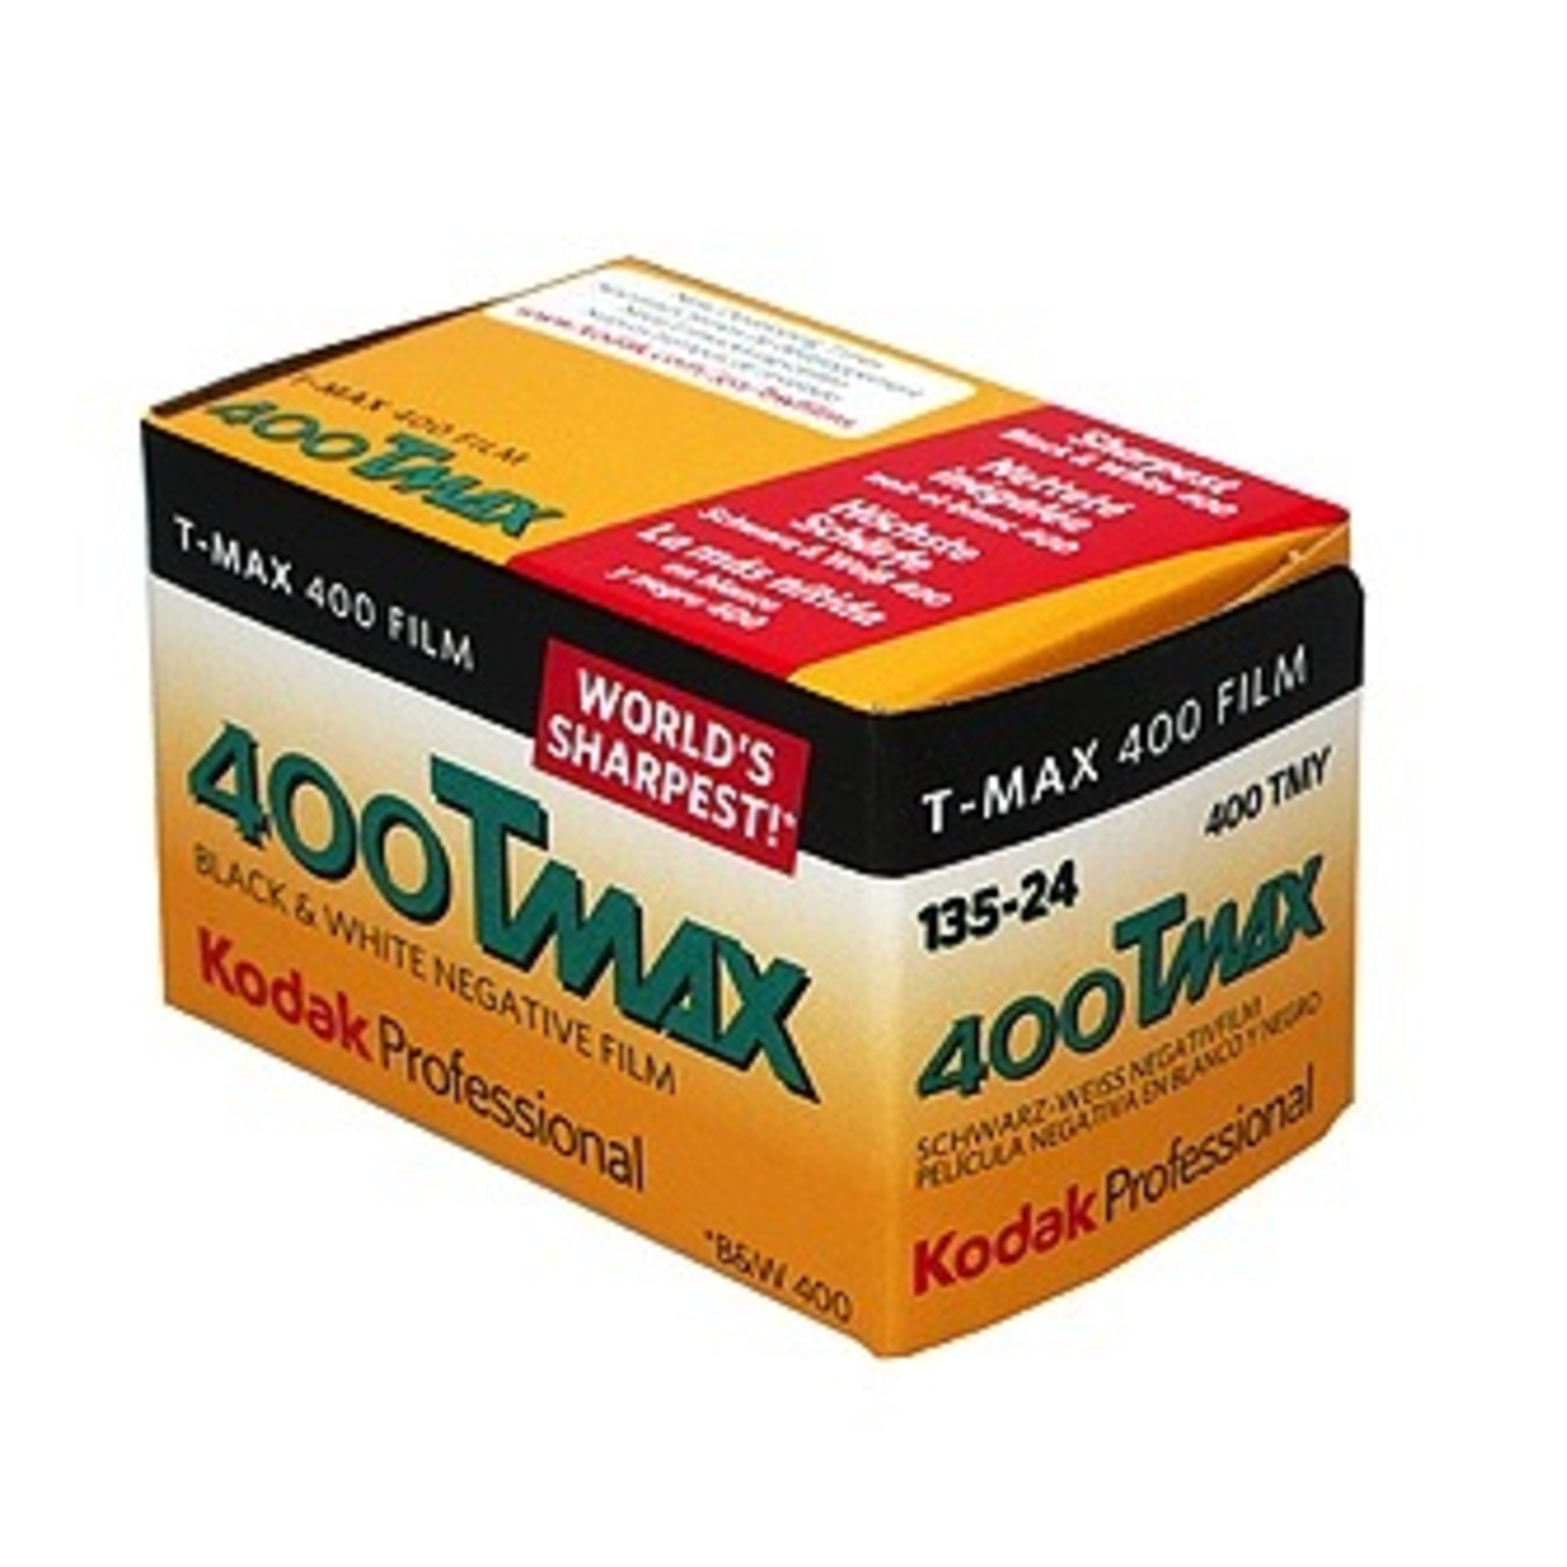 Kodak Professional T-MAX 400 Film / TMY 135-24 pp